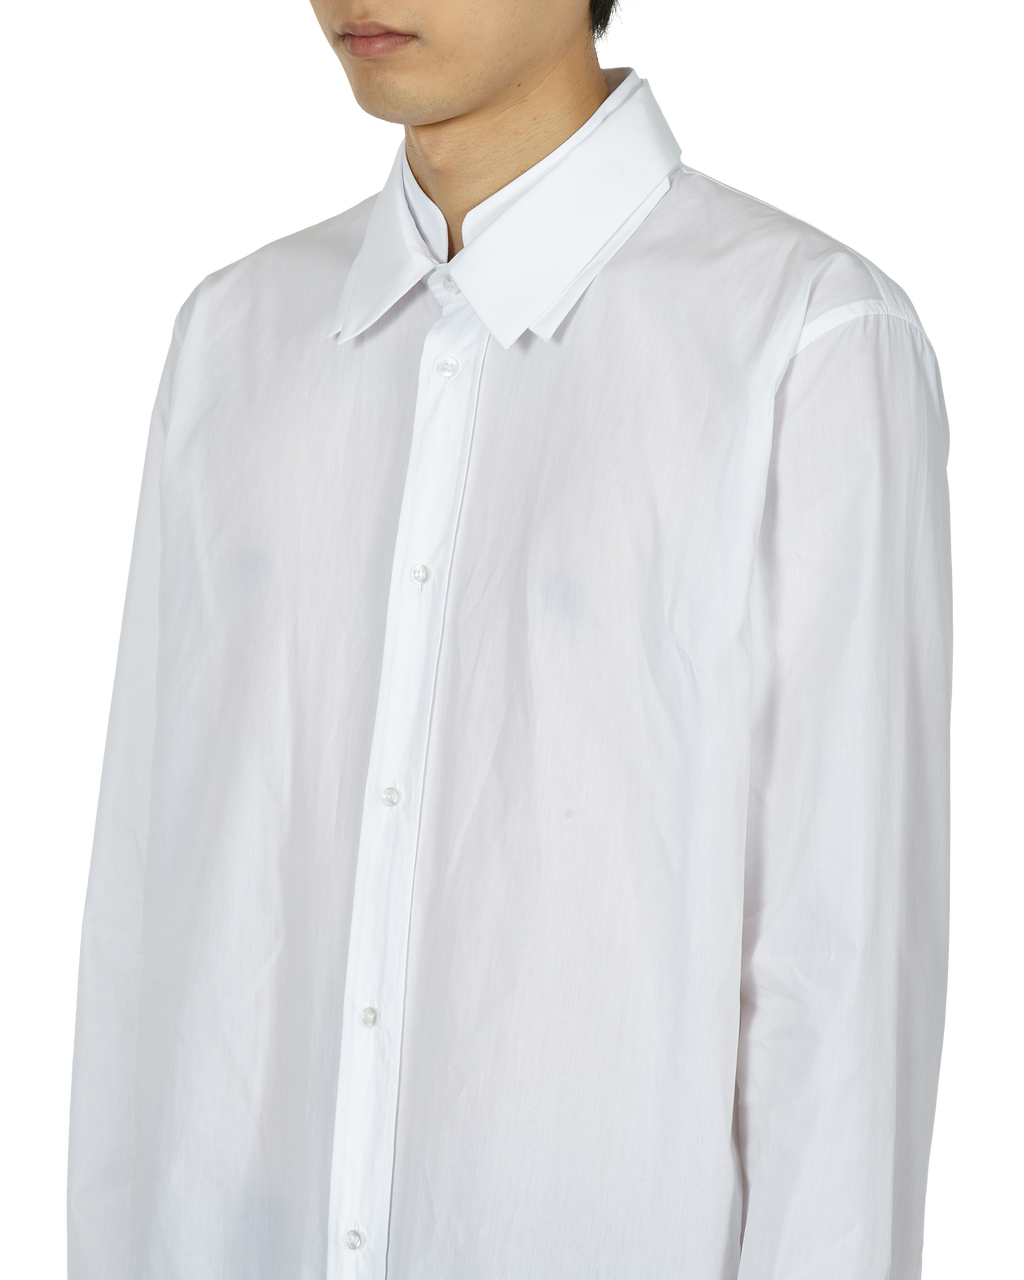 _J.L - A.L_ Triple Collar Shirt J278598-S-White